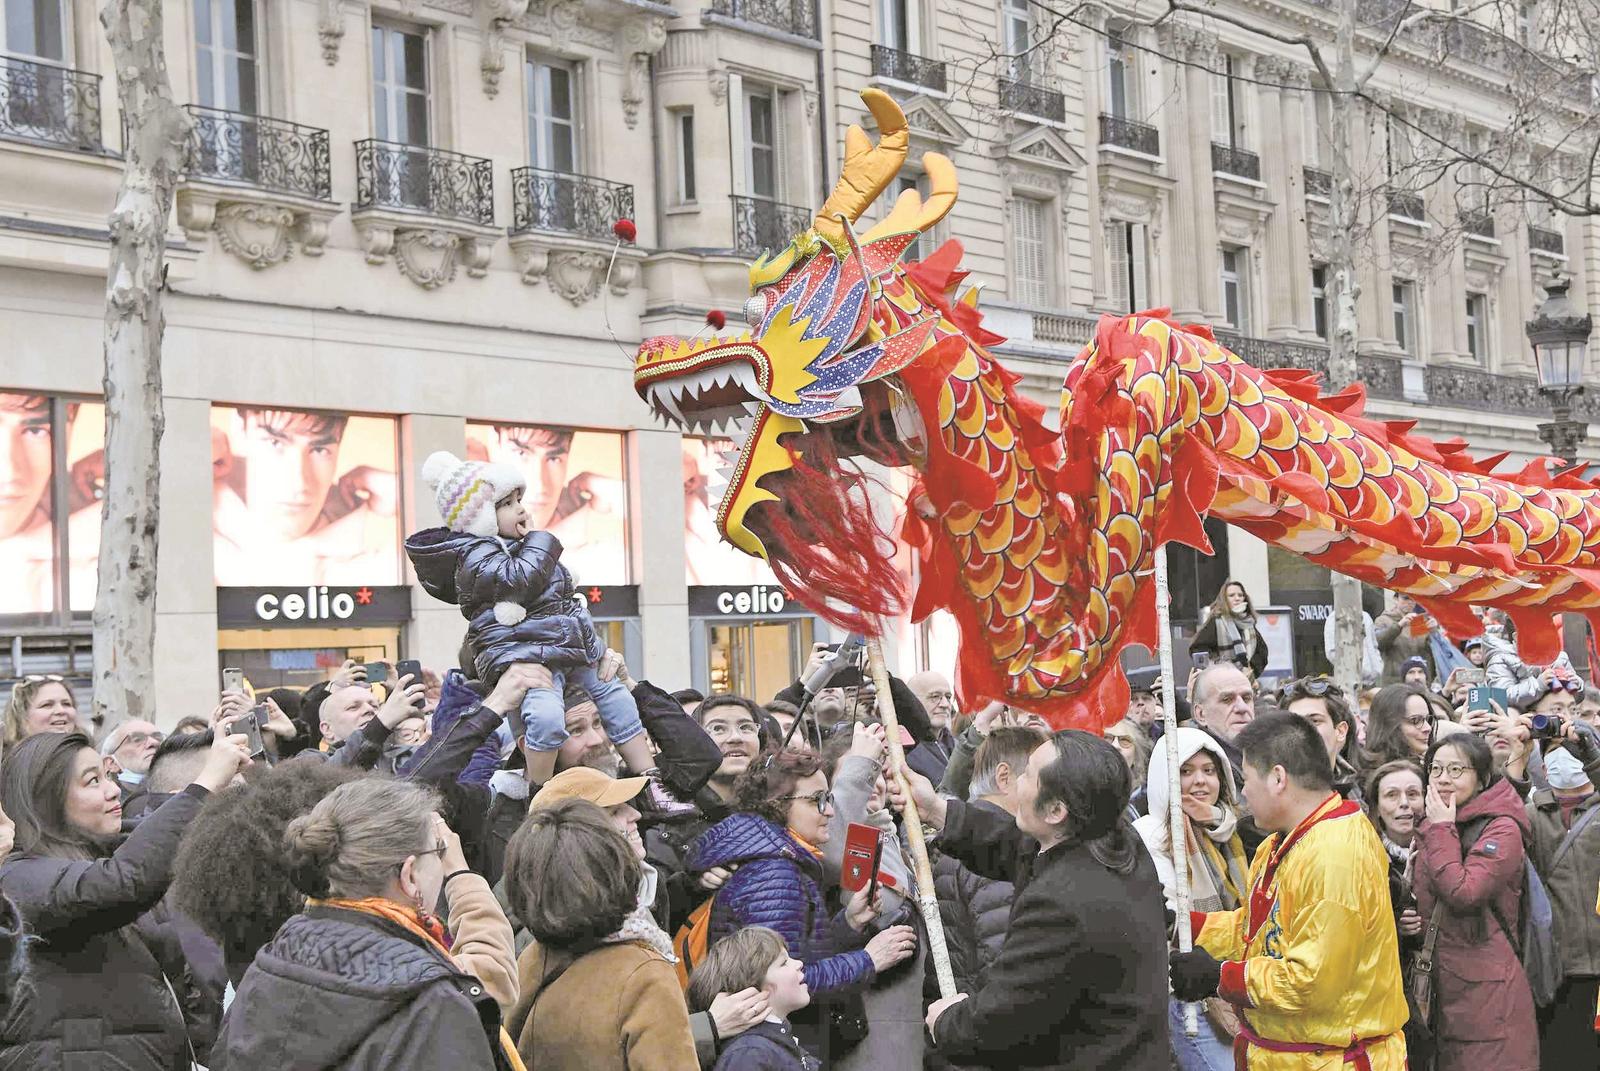 法国巴黎香榭丽舍大街举办舞狮活动 视觉中国 供图